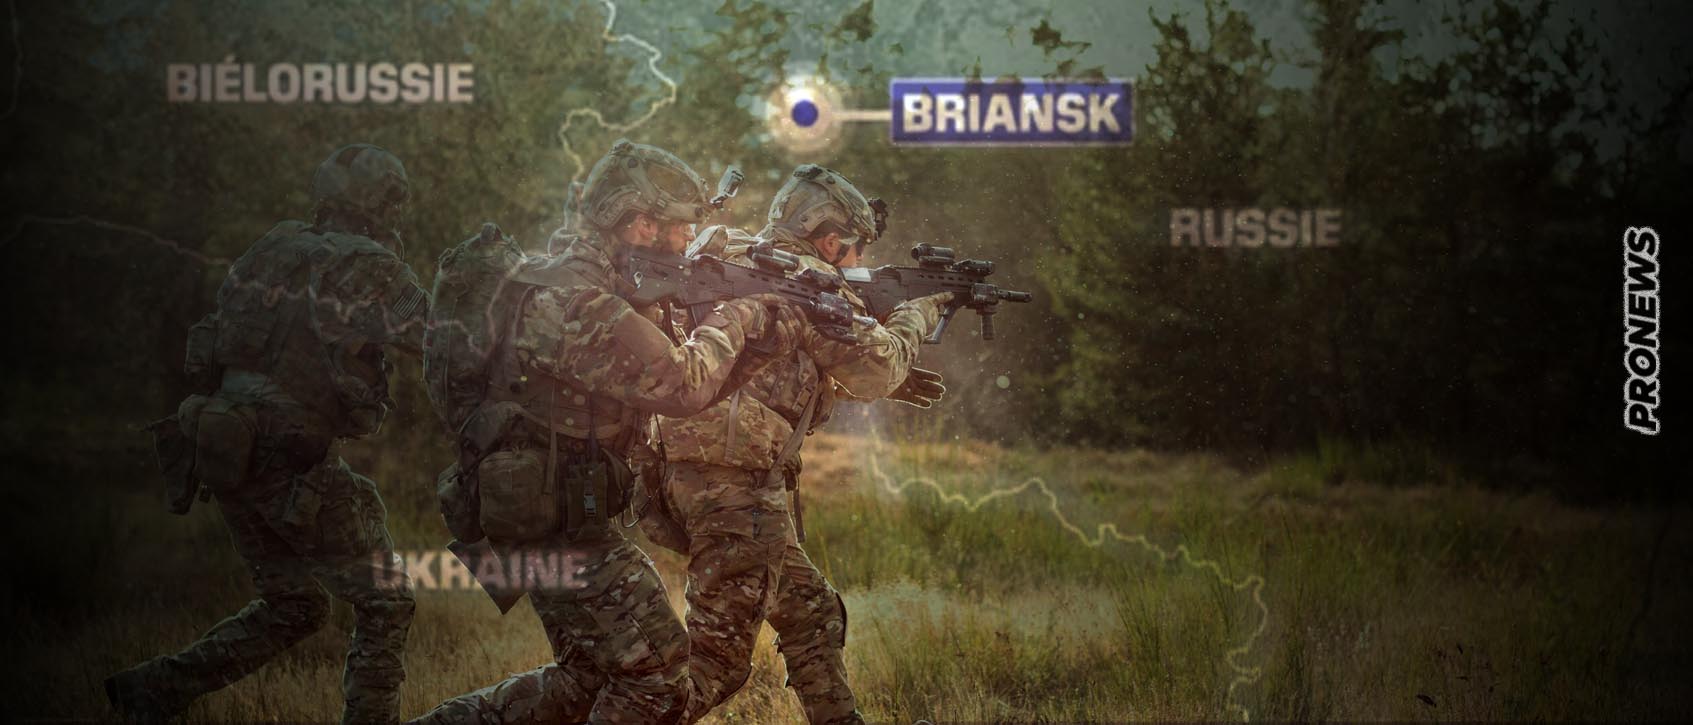 Νέα εισβολή Ουκρανών σαμποτέρ στο ρωσικό Μπριάνσκ! – Σκοτώθηκαν δύο Ρώσοι στρατιώτες από drone καμικάζι!